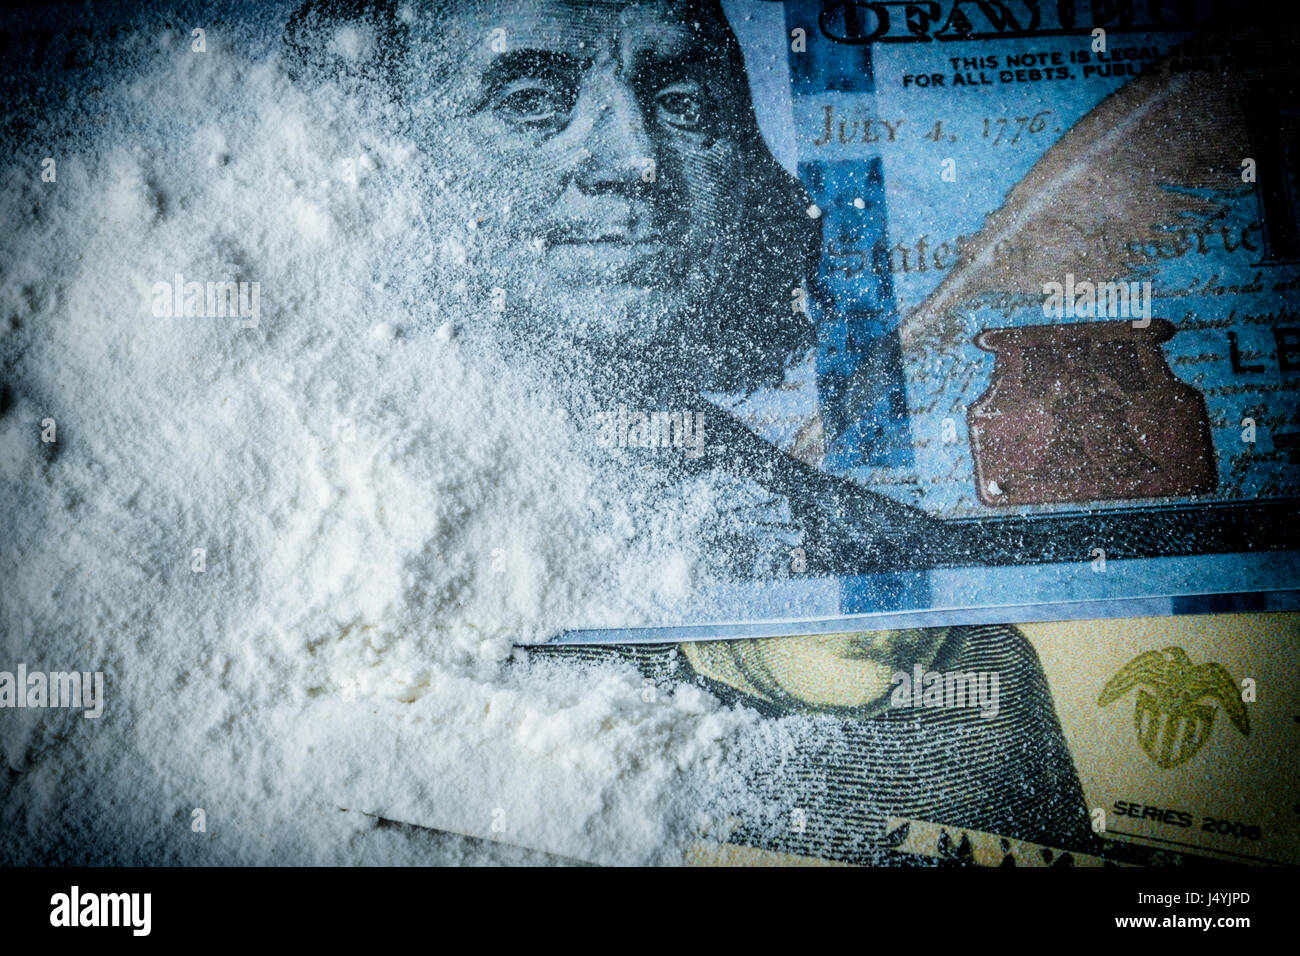 Kokain Drogen Pulver Haufen zusammen mit mehrere Dollar tickets Stockfoto